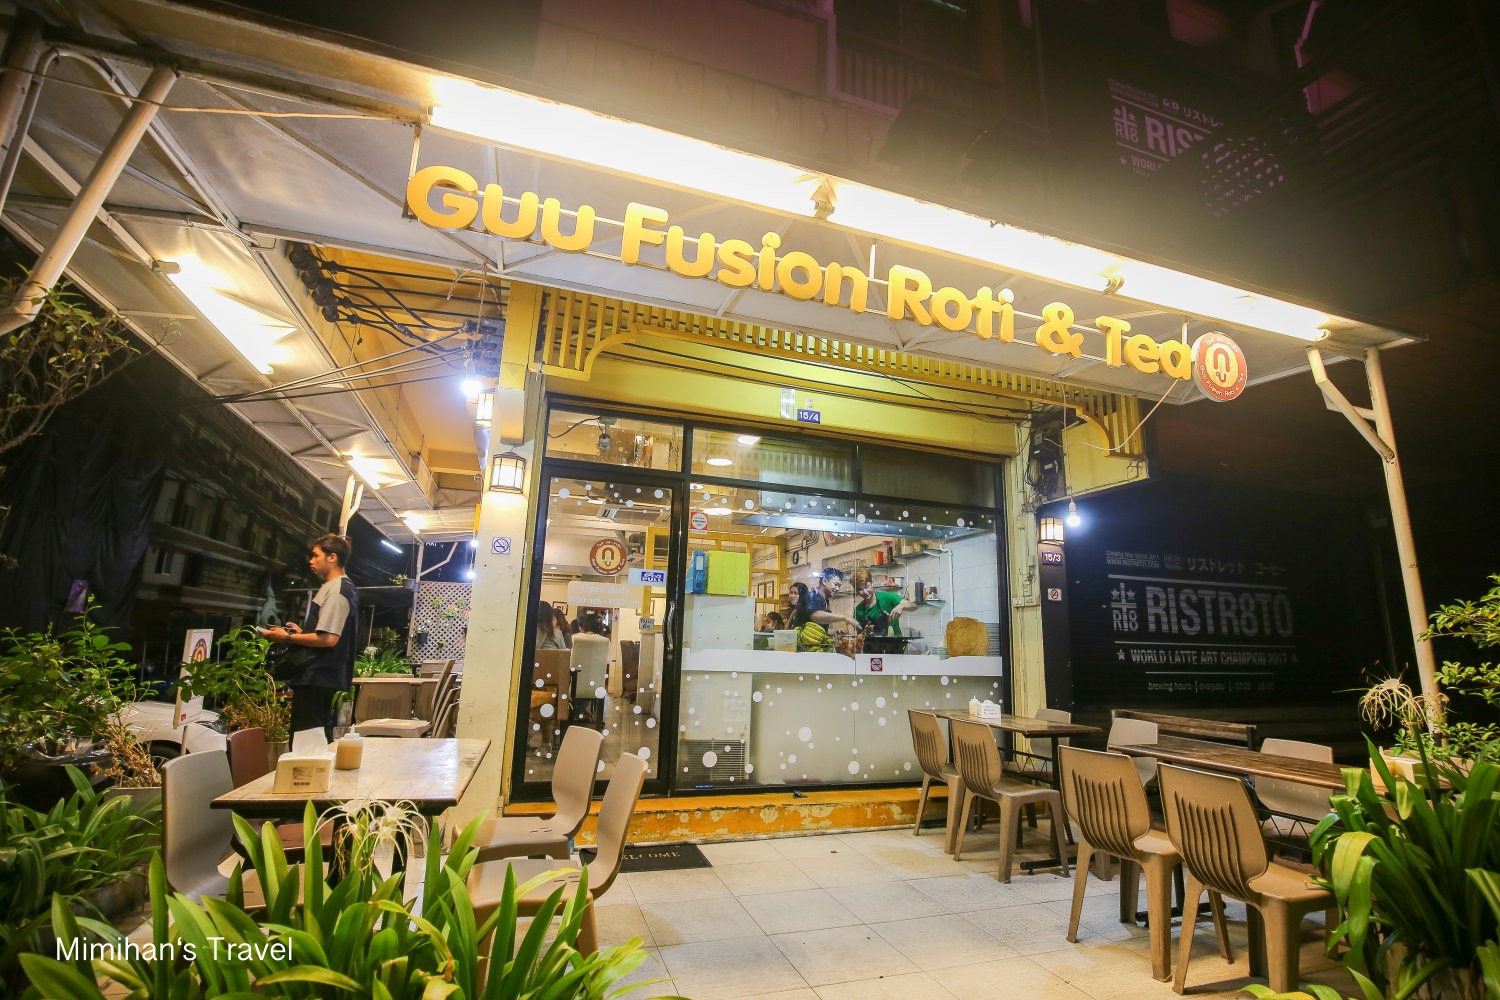 【清邁尼曼路美食】Guu Fusion Roti 香蕉煎餅專賣：數十種鹹甜口味Roti超人氣推薦！誰說香蕉煎餅一定要有香蕉？